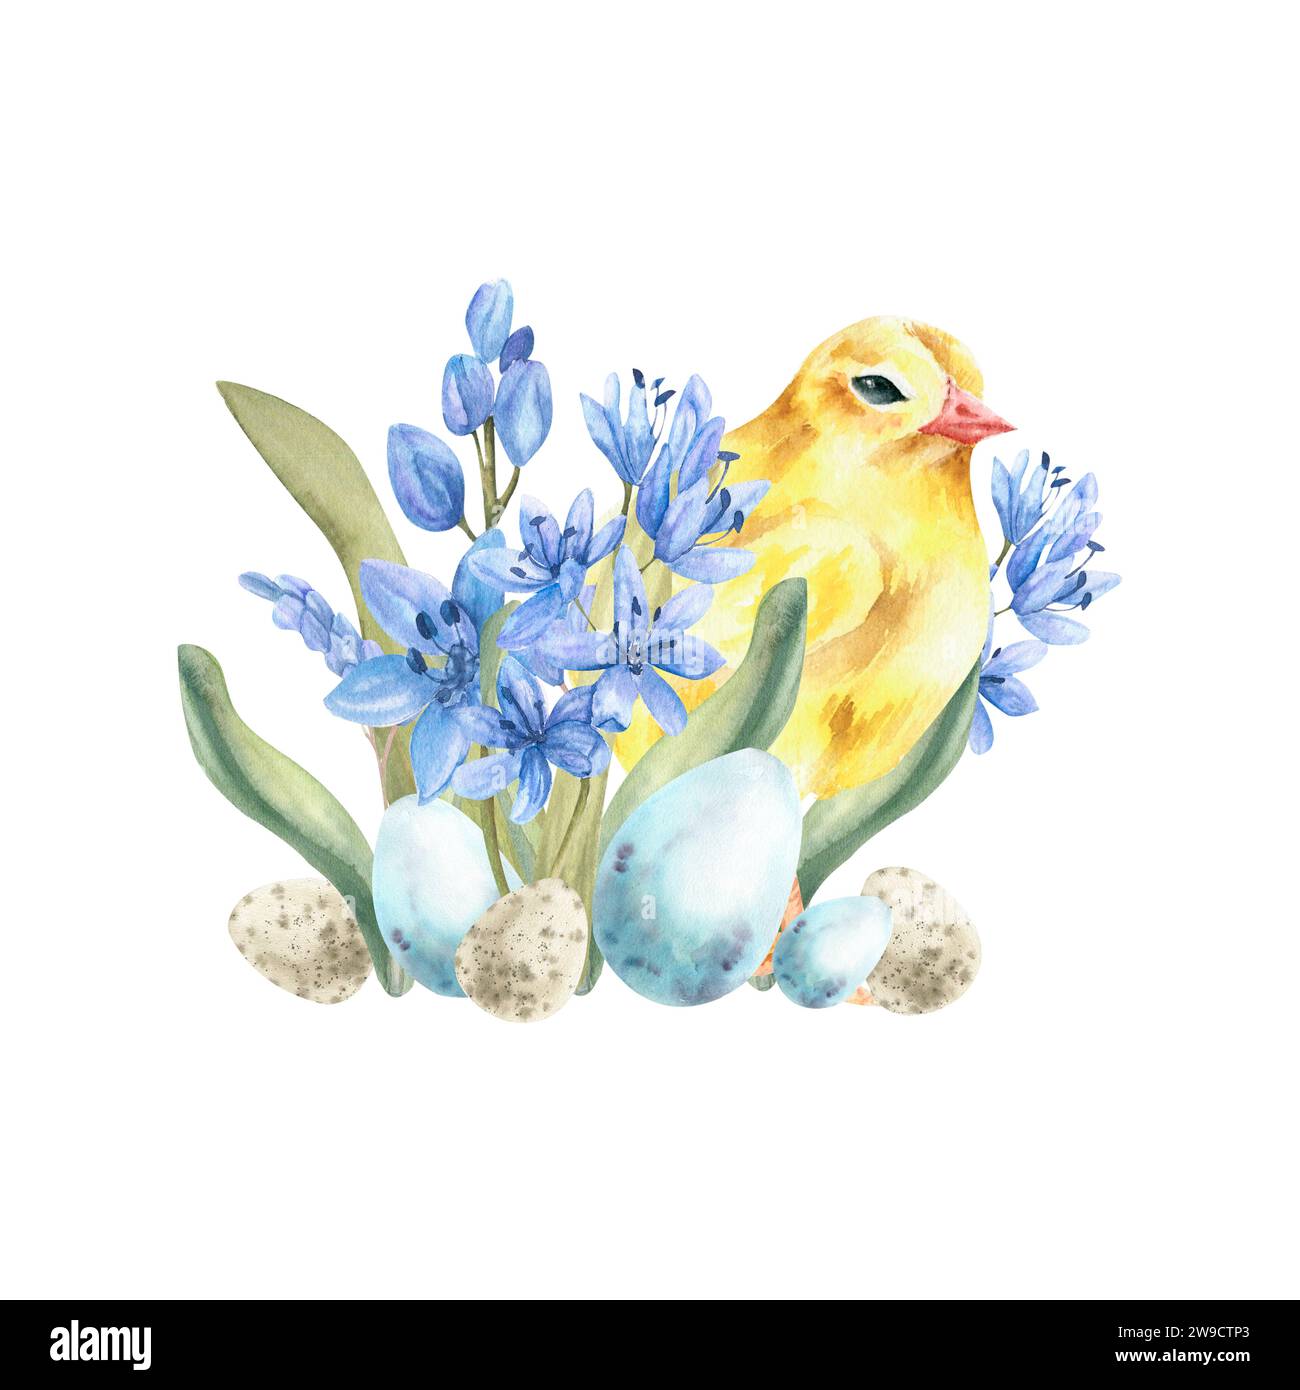 Composition aquarelle joyeuse Pâques avec poulet jaune, fleurs pâles bleu printemps et œufs. Clip art vintage dessiné à la main pour invitation, étiquette, logo, p Banque D'Images